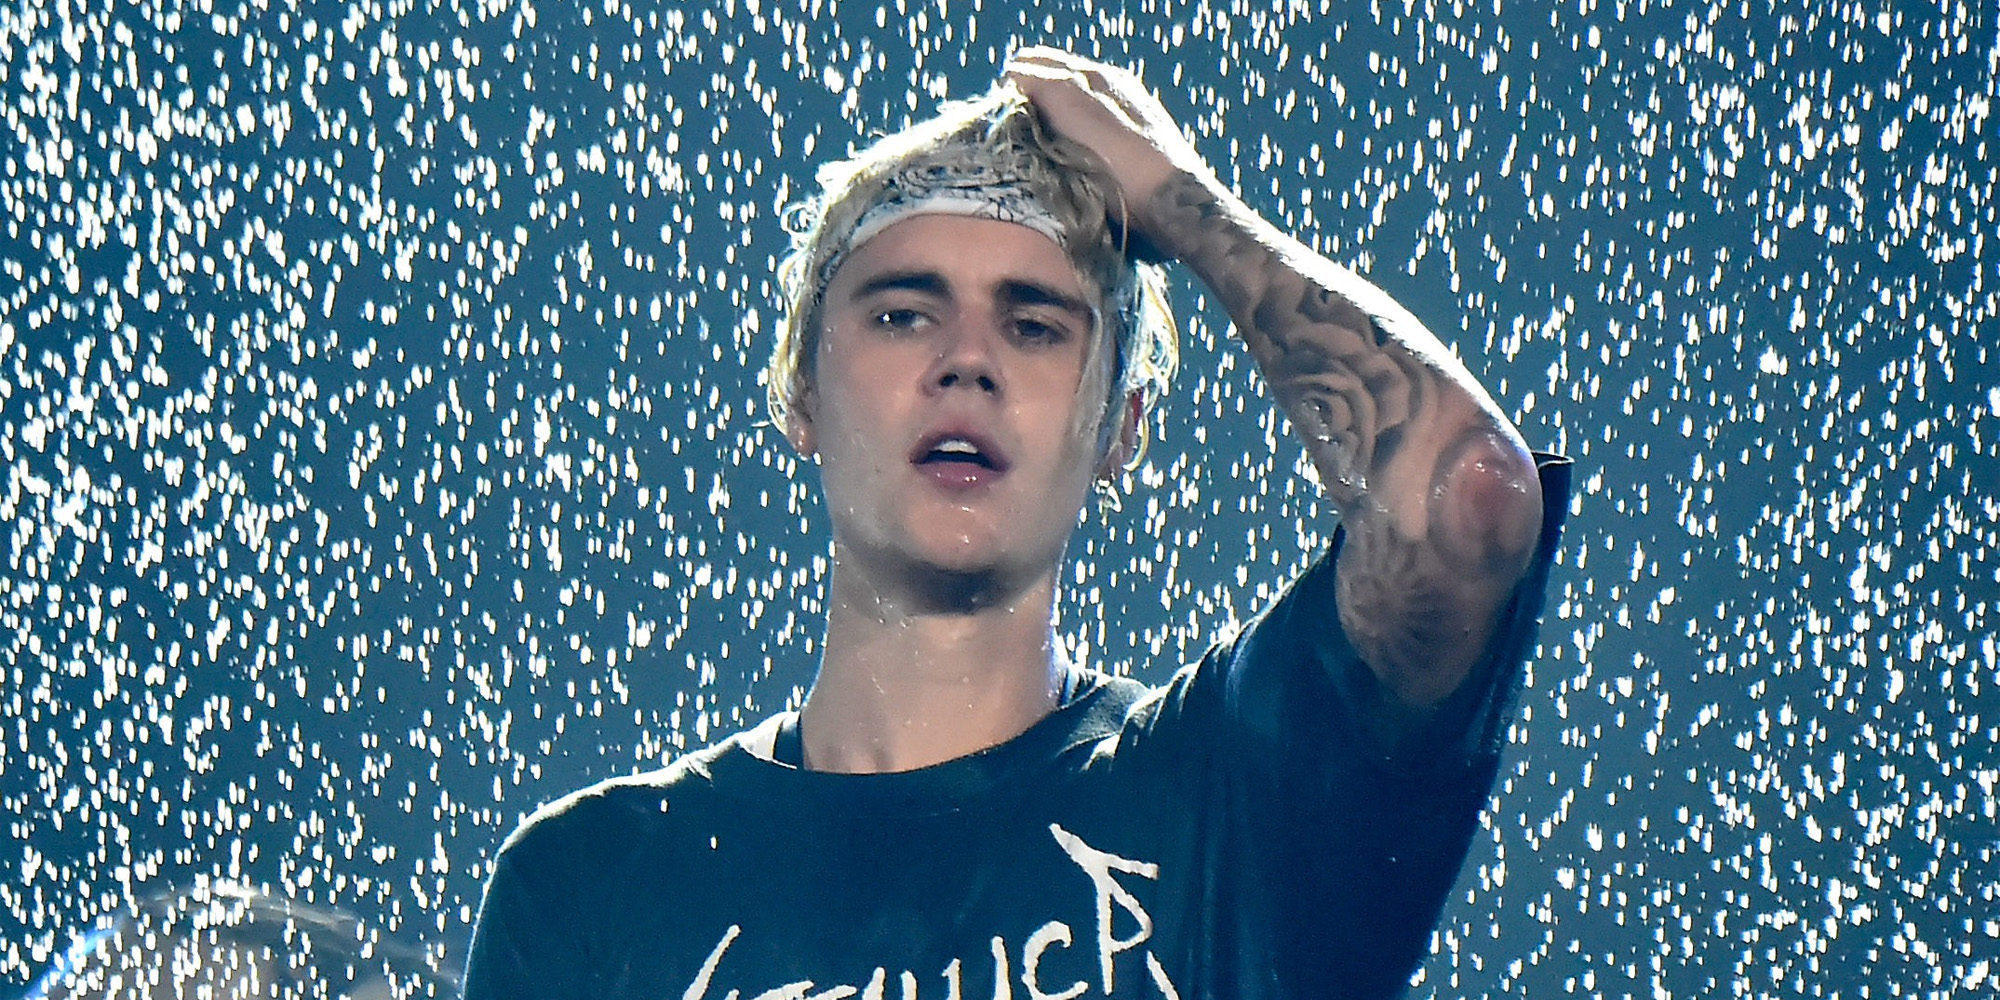 Justin Bieber le propina un puñetazo a un fan antes de su concierto en Barcelona